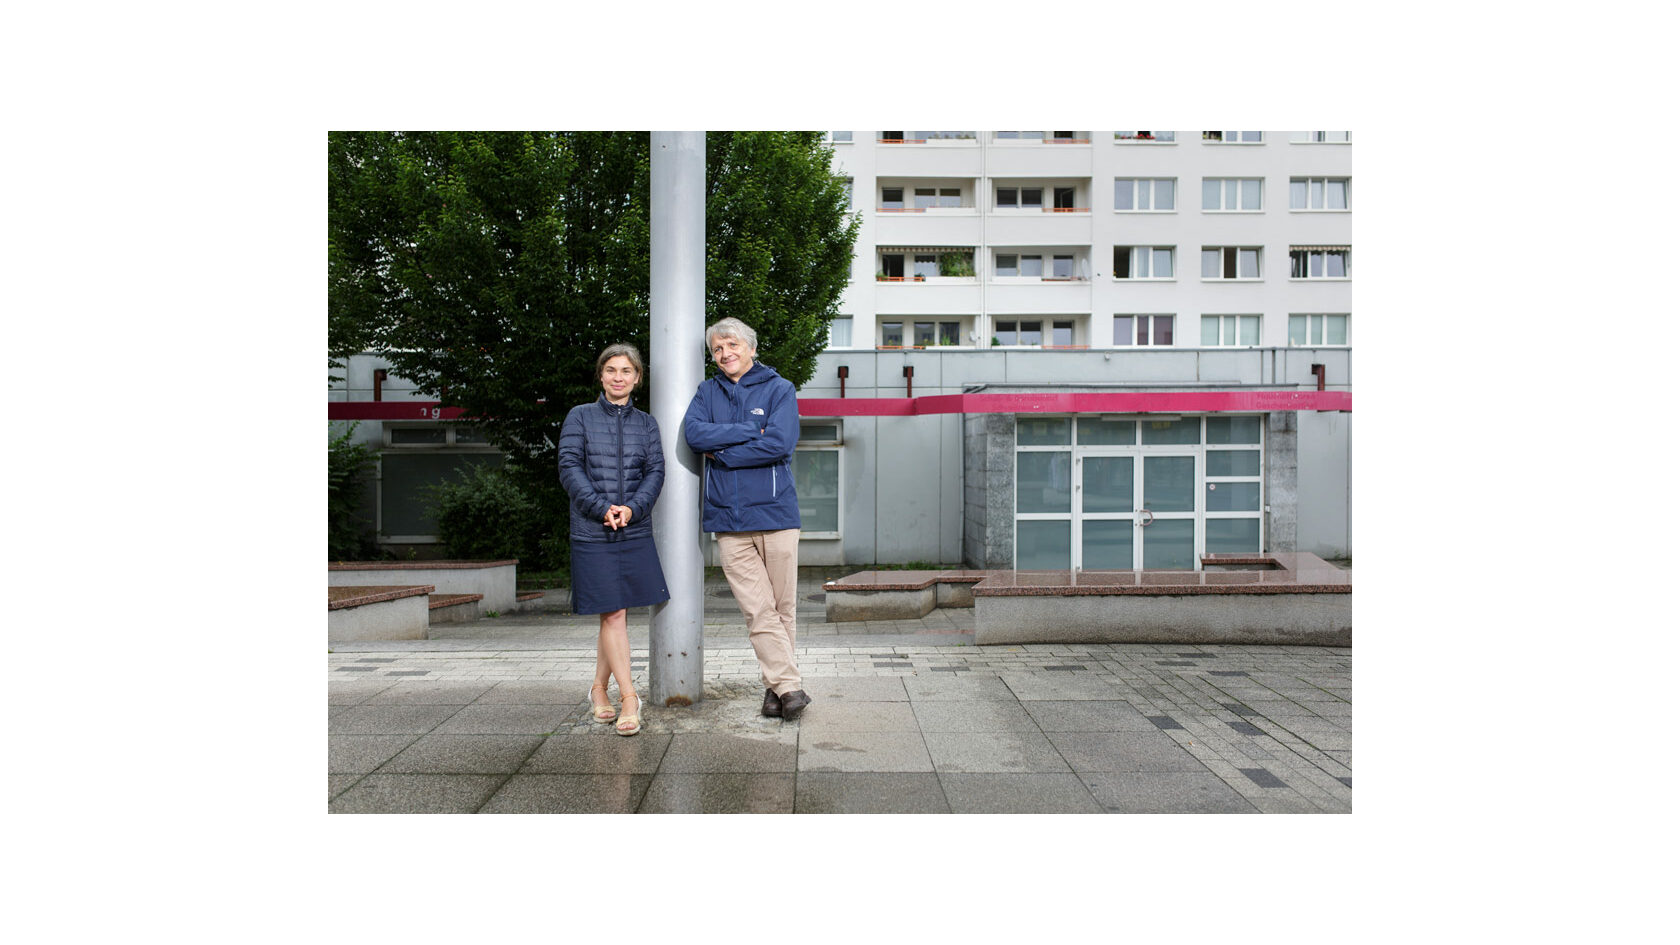 Portraitfoto der Initiatoren des Projekts "Zu Hause in Prohlis", Katrin Lindner und Andreas Nattermann. Beide stehen an einen Pfahl gelehnt im Dresdner Stadtteil Prohlis.